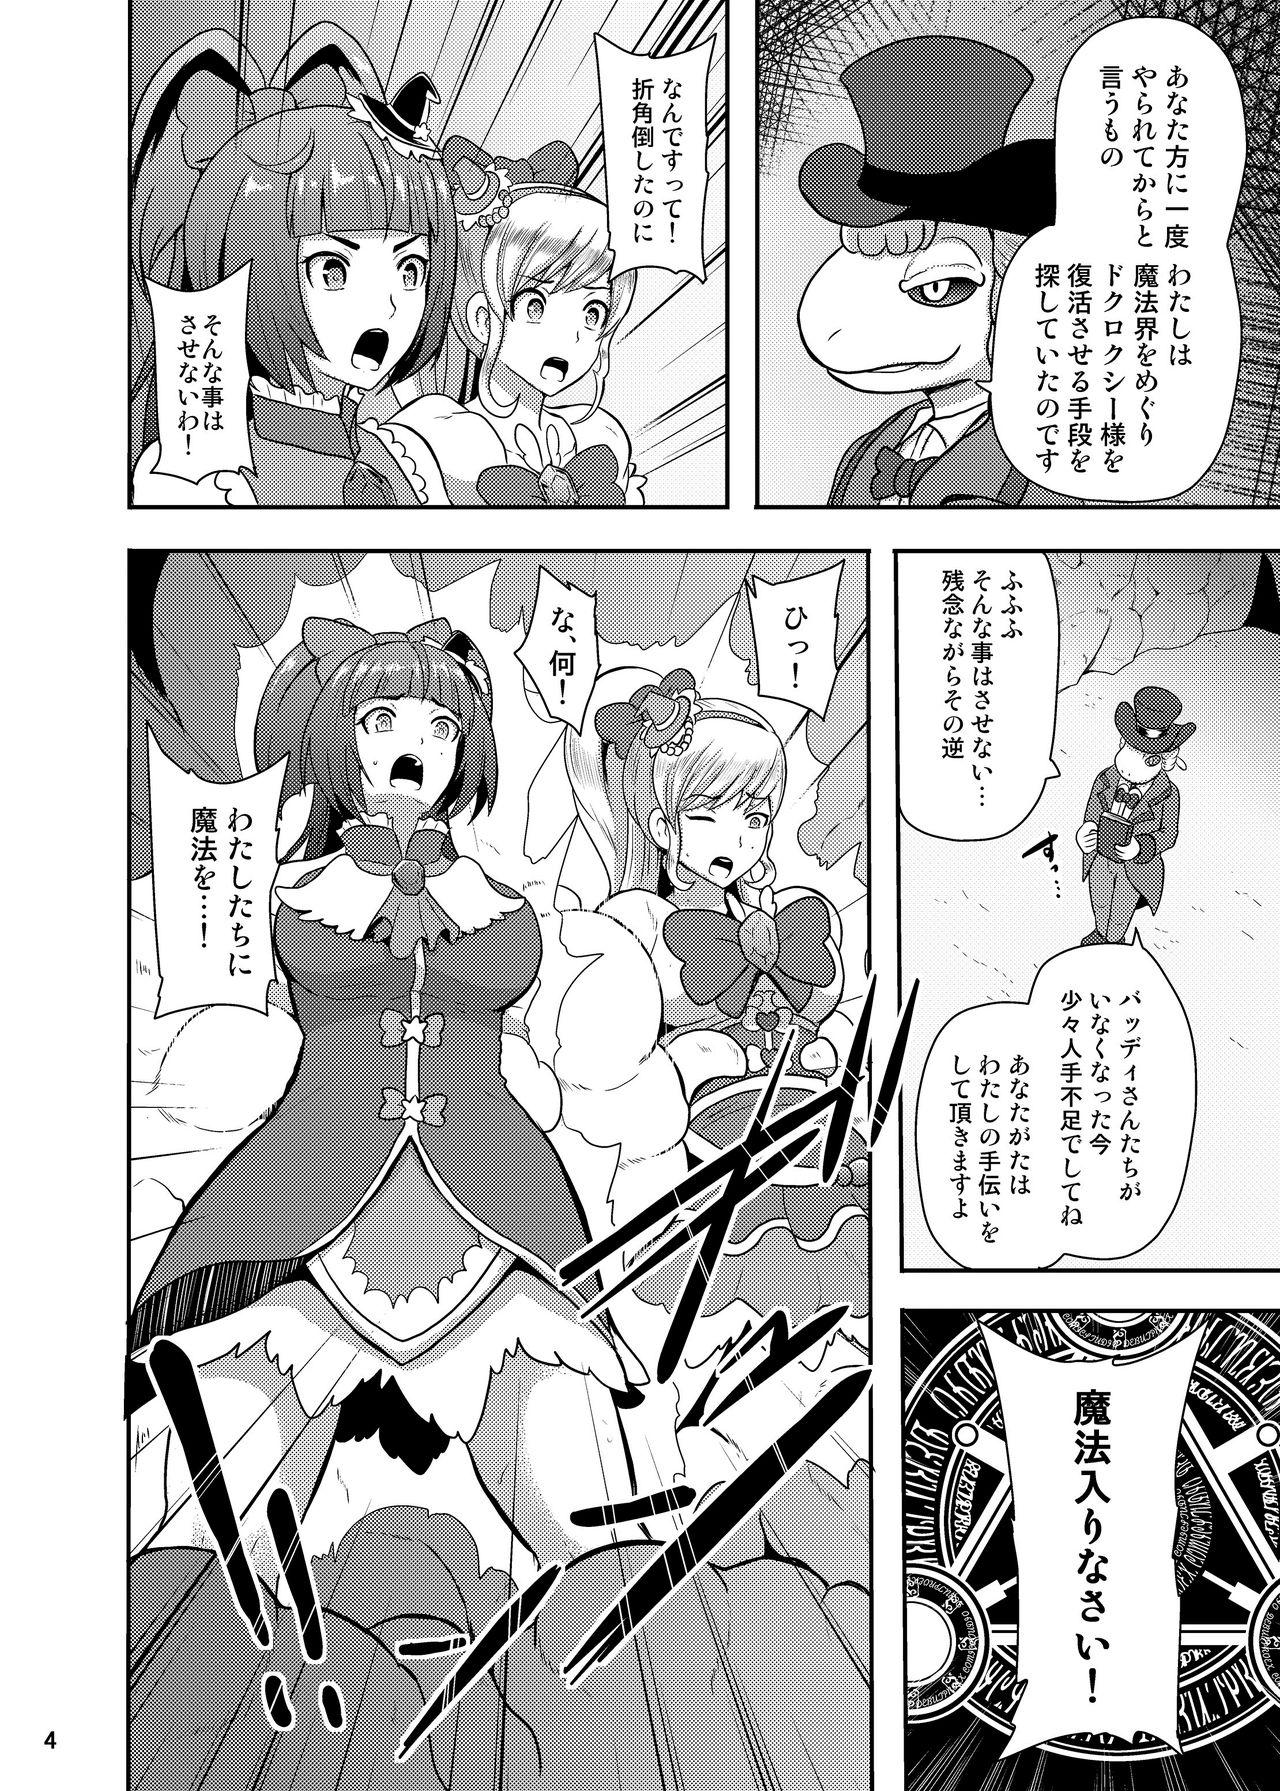 Staxxx Densetsu no Mahou Tsukai wa Kyou Inaku Narimashita - Maho girls precure Stepfamily - Page 4